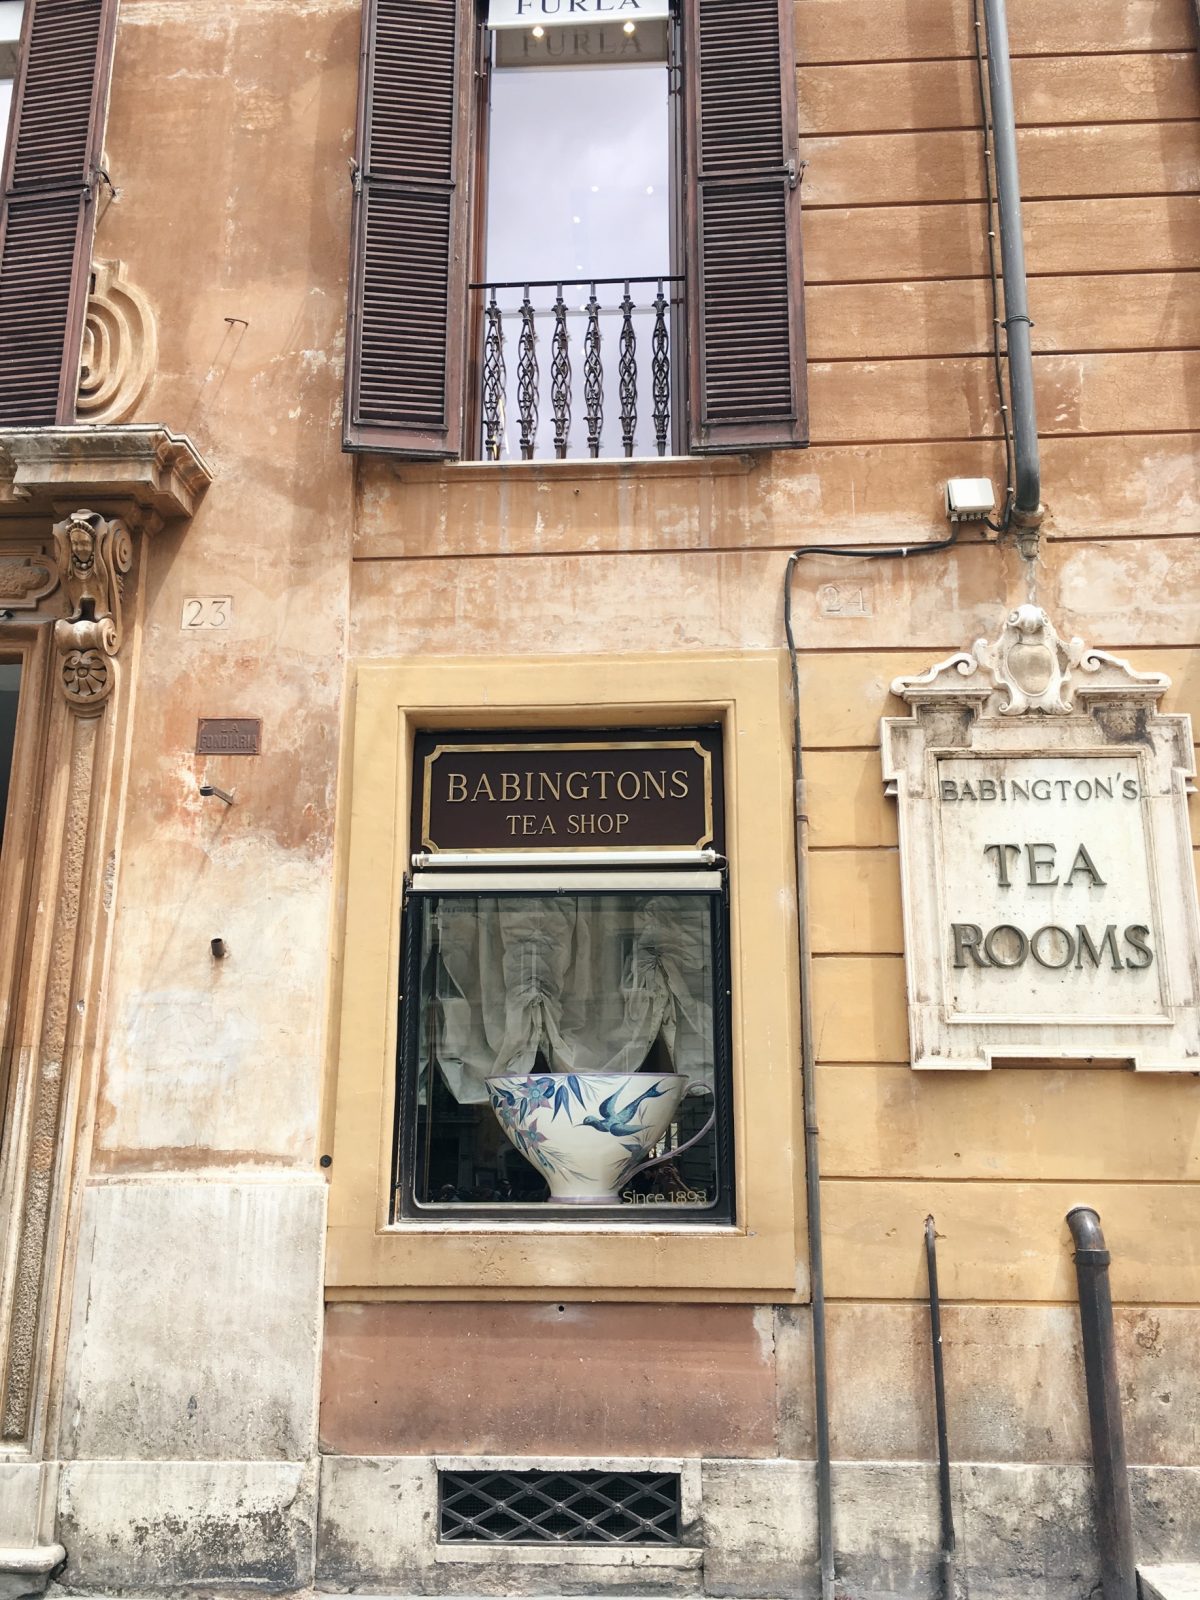 Ein Staedtetrip nach Rom mit jeder Menge Insider Tipps